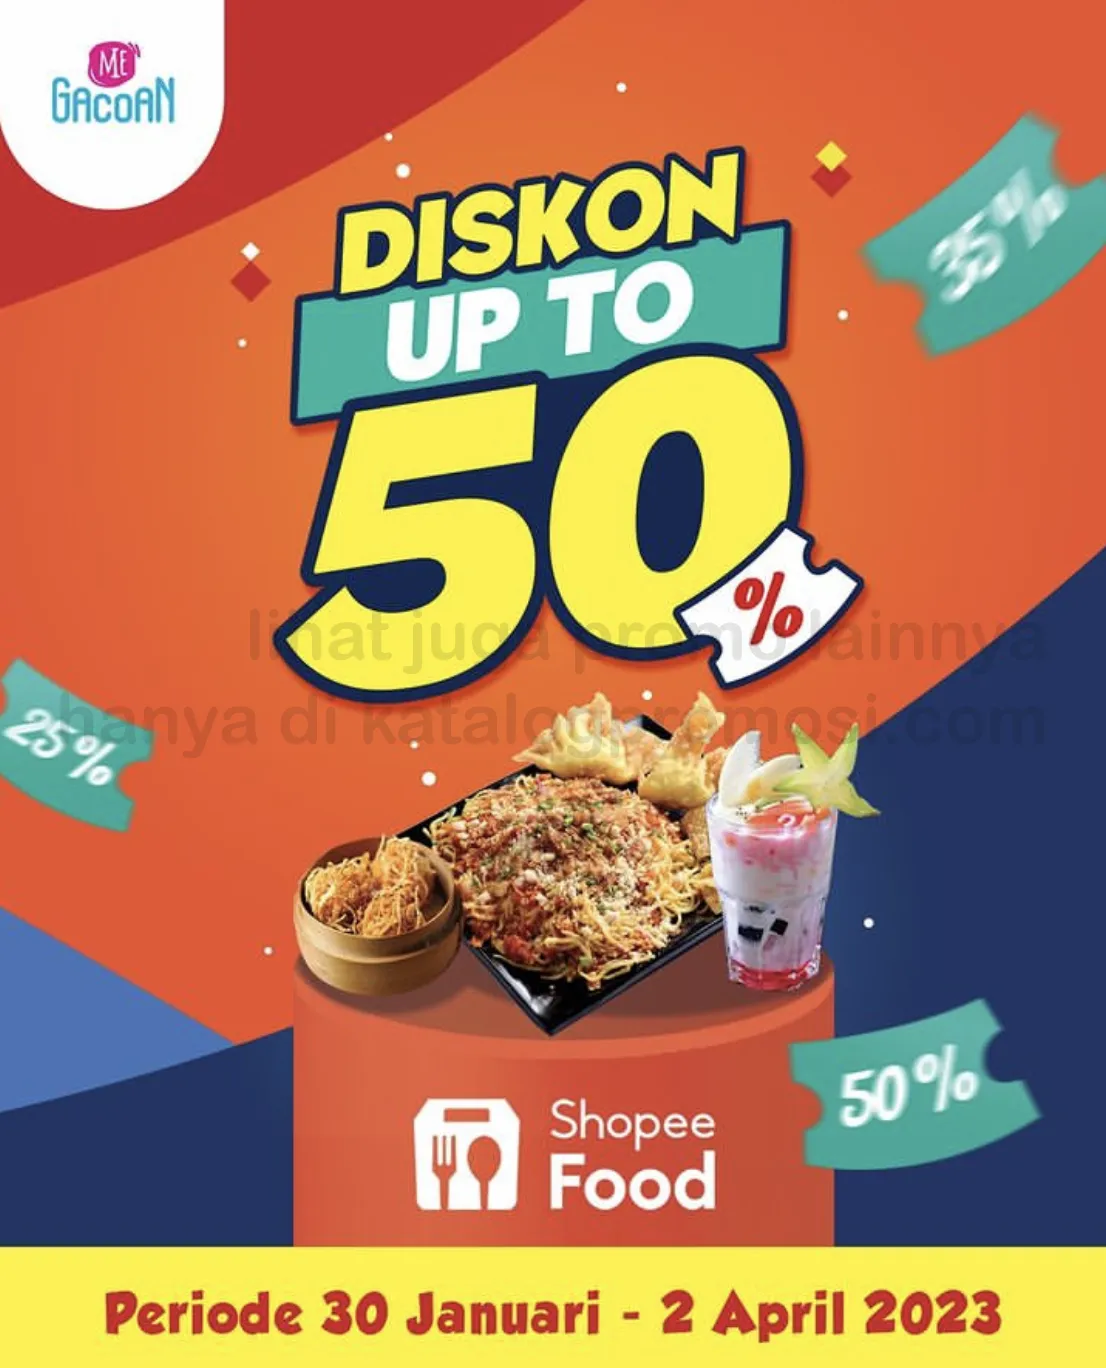 Promo MIE GACOAN DISKON HINGGA 50% untuk pemesanan via SHOPEEFOOD